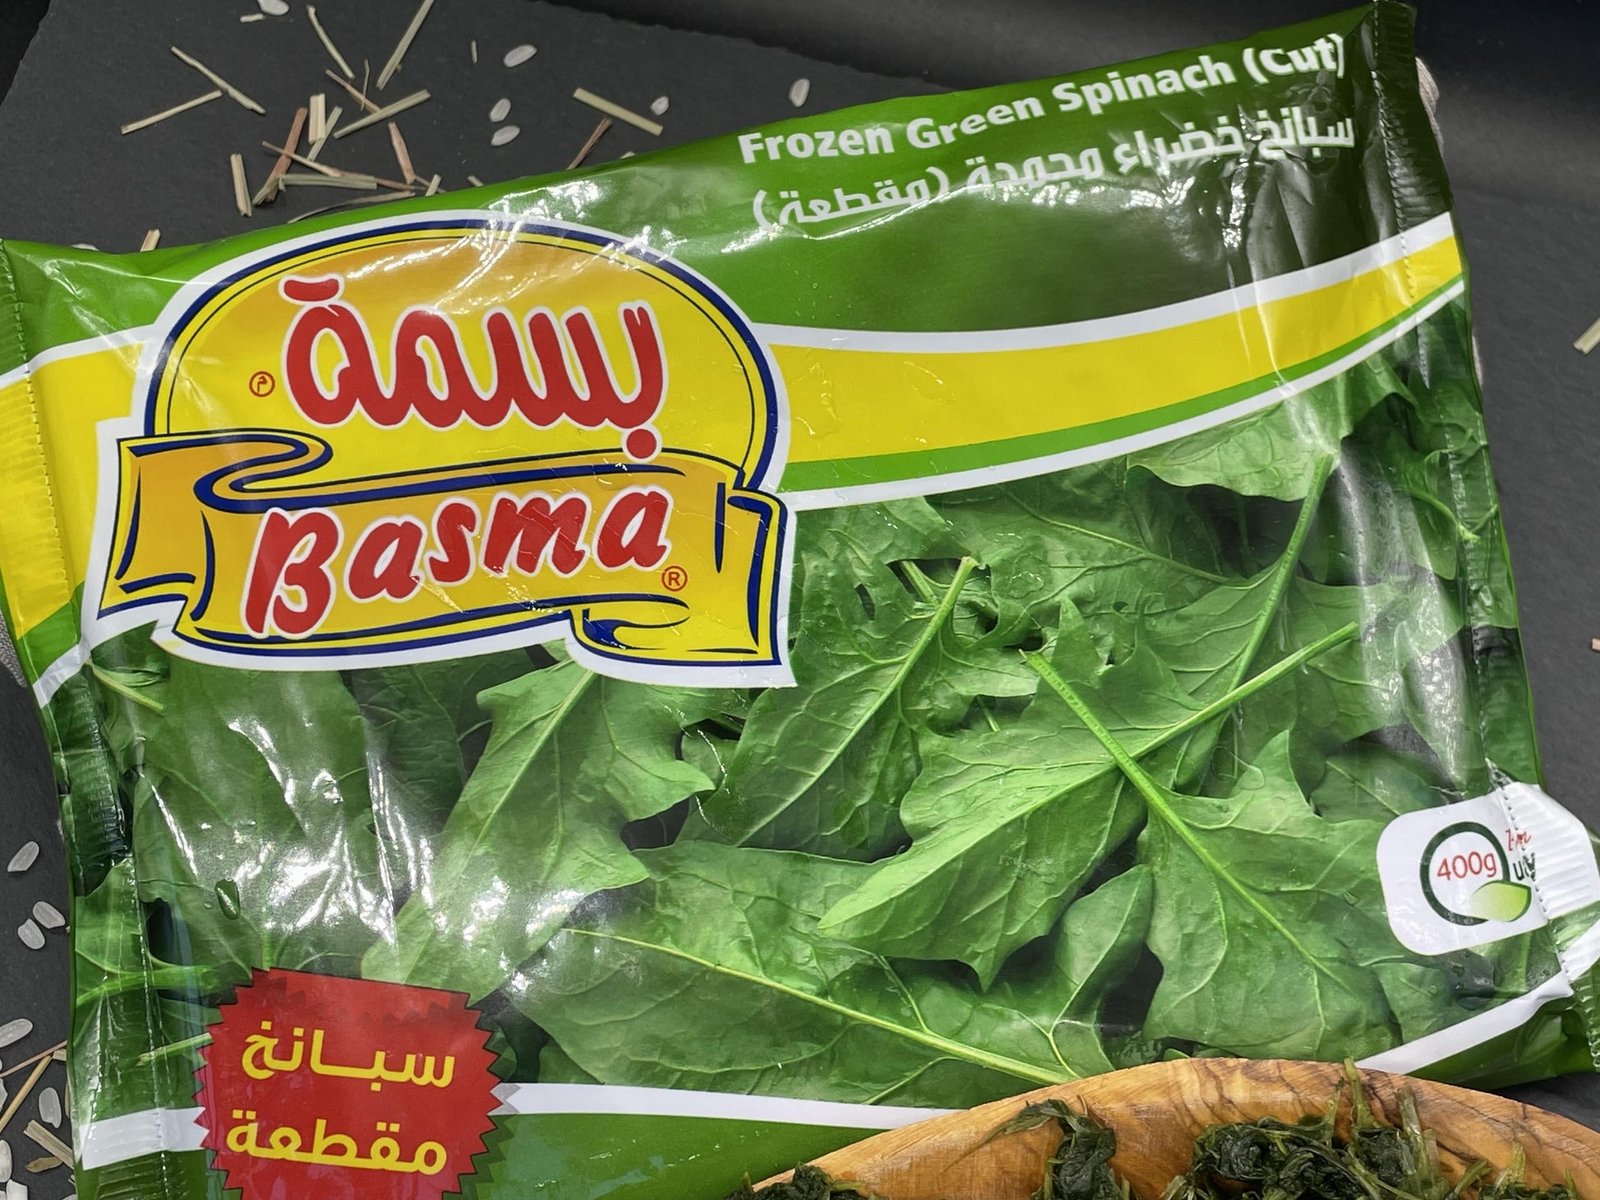 Spinach Basma